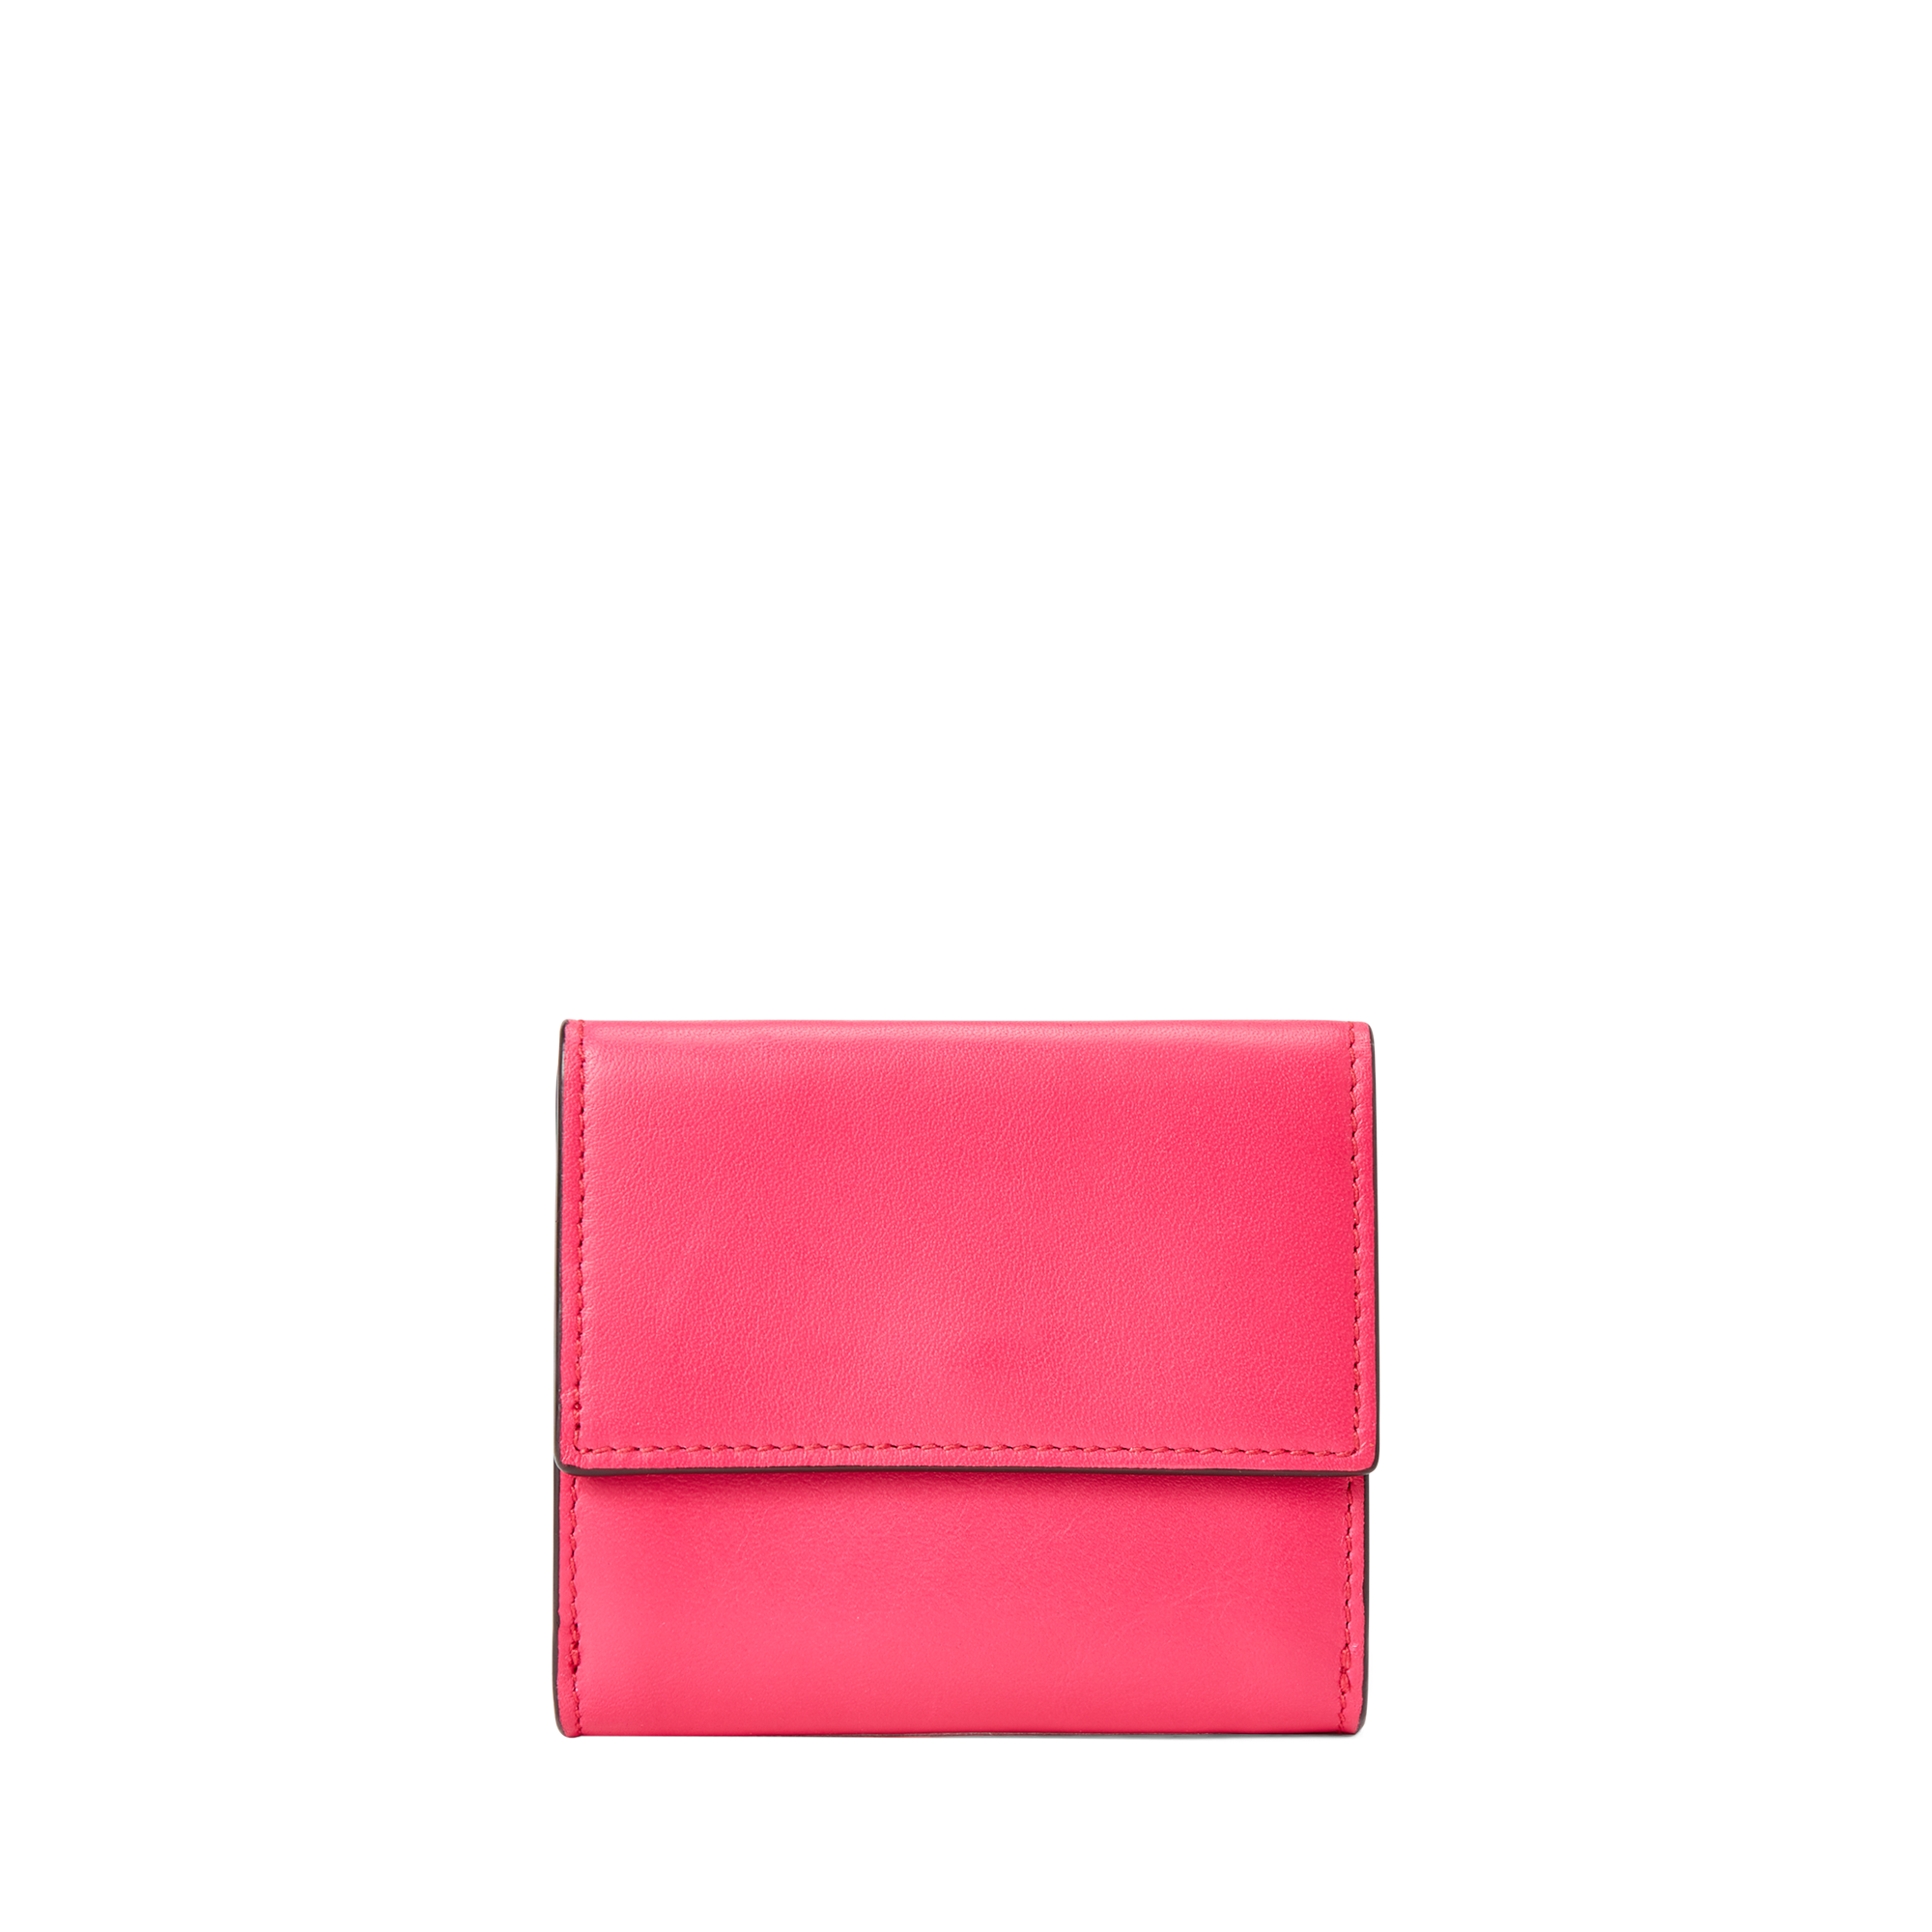 Ralph Lauren Nappa Leather Wallet. 2